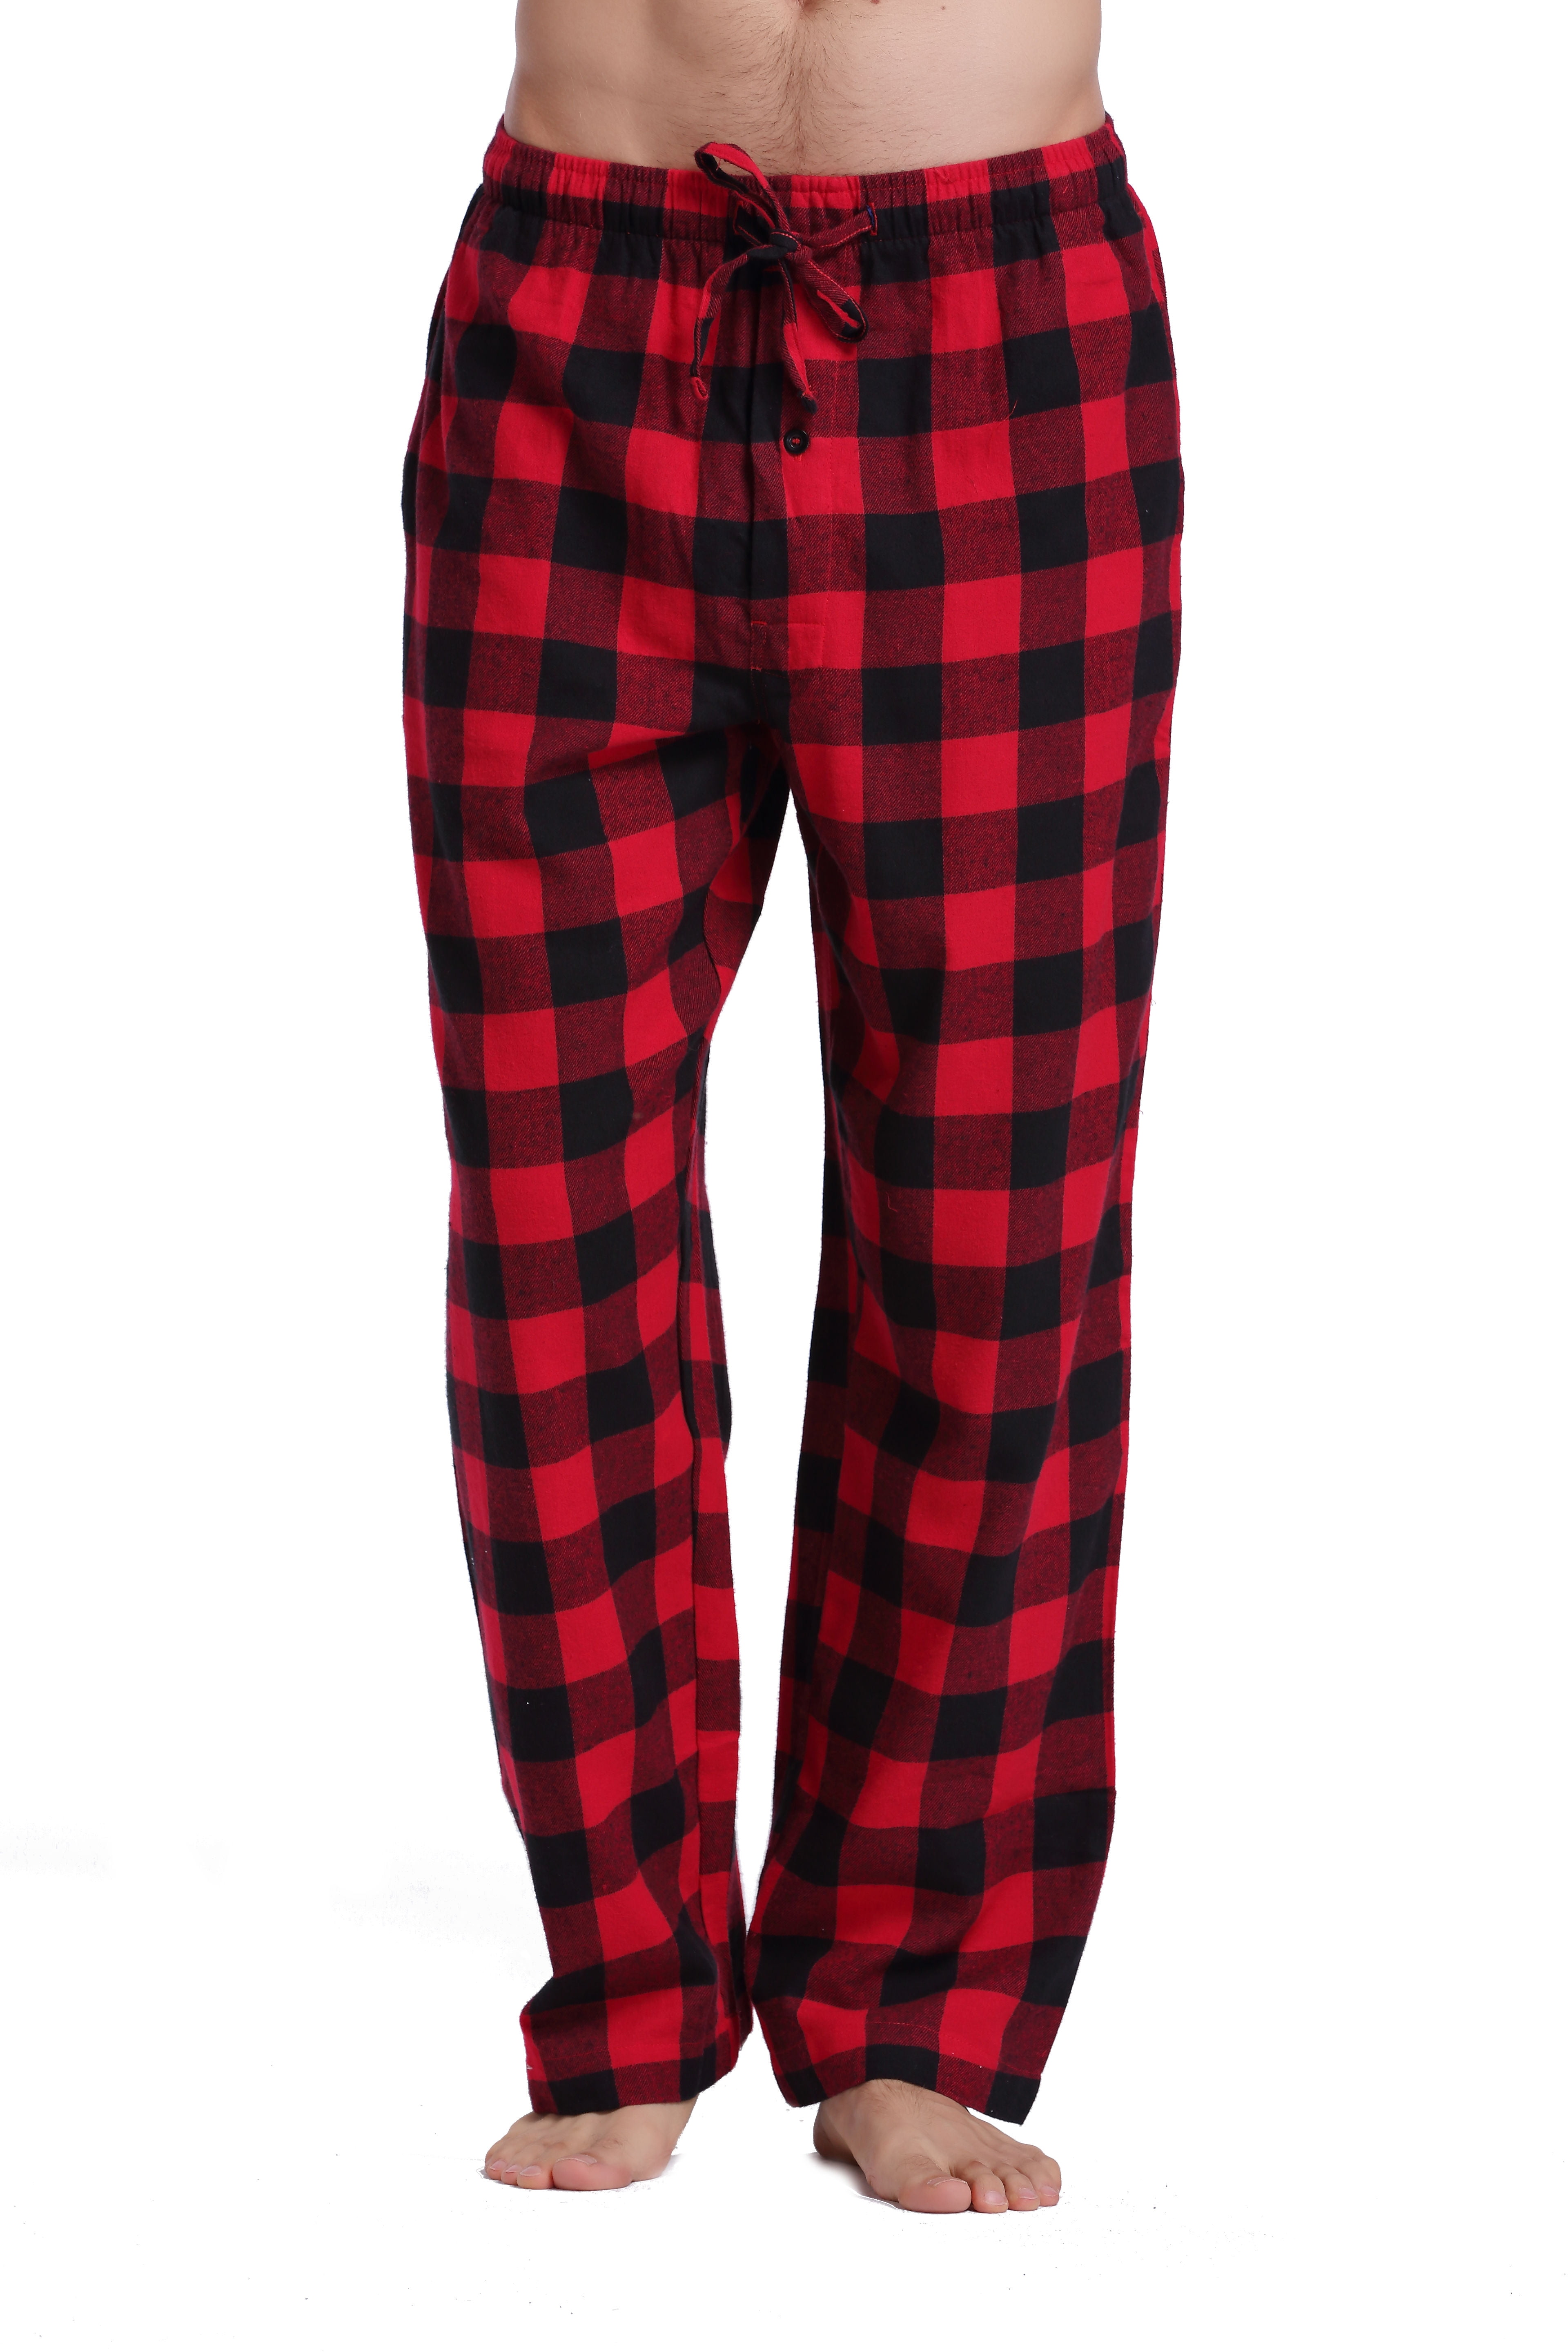 CYZ Men's 100% Cotton Super Soft Flannel Plaid Pajama Pants ...